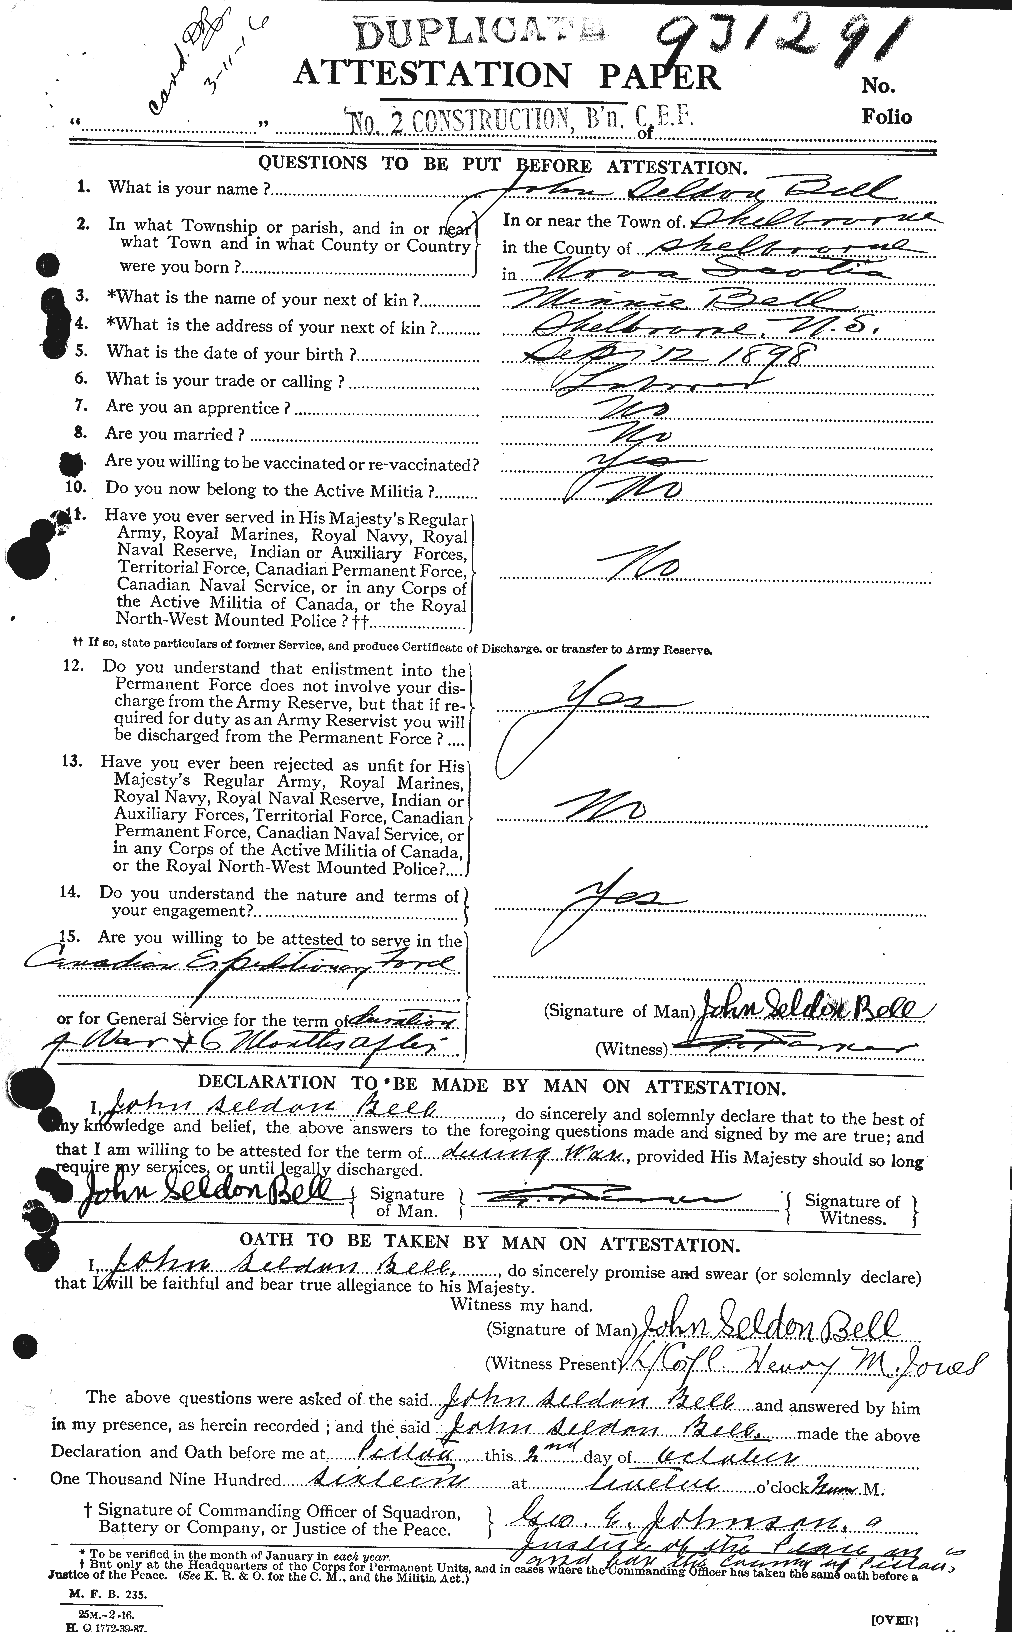 Dossiers du Personnel de la Première Guerre mondiale - CEC 234450a